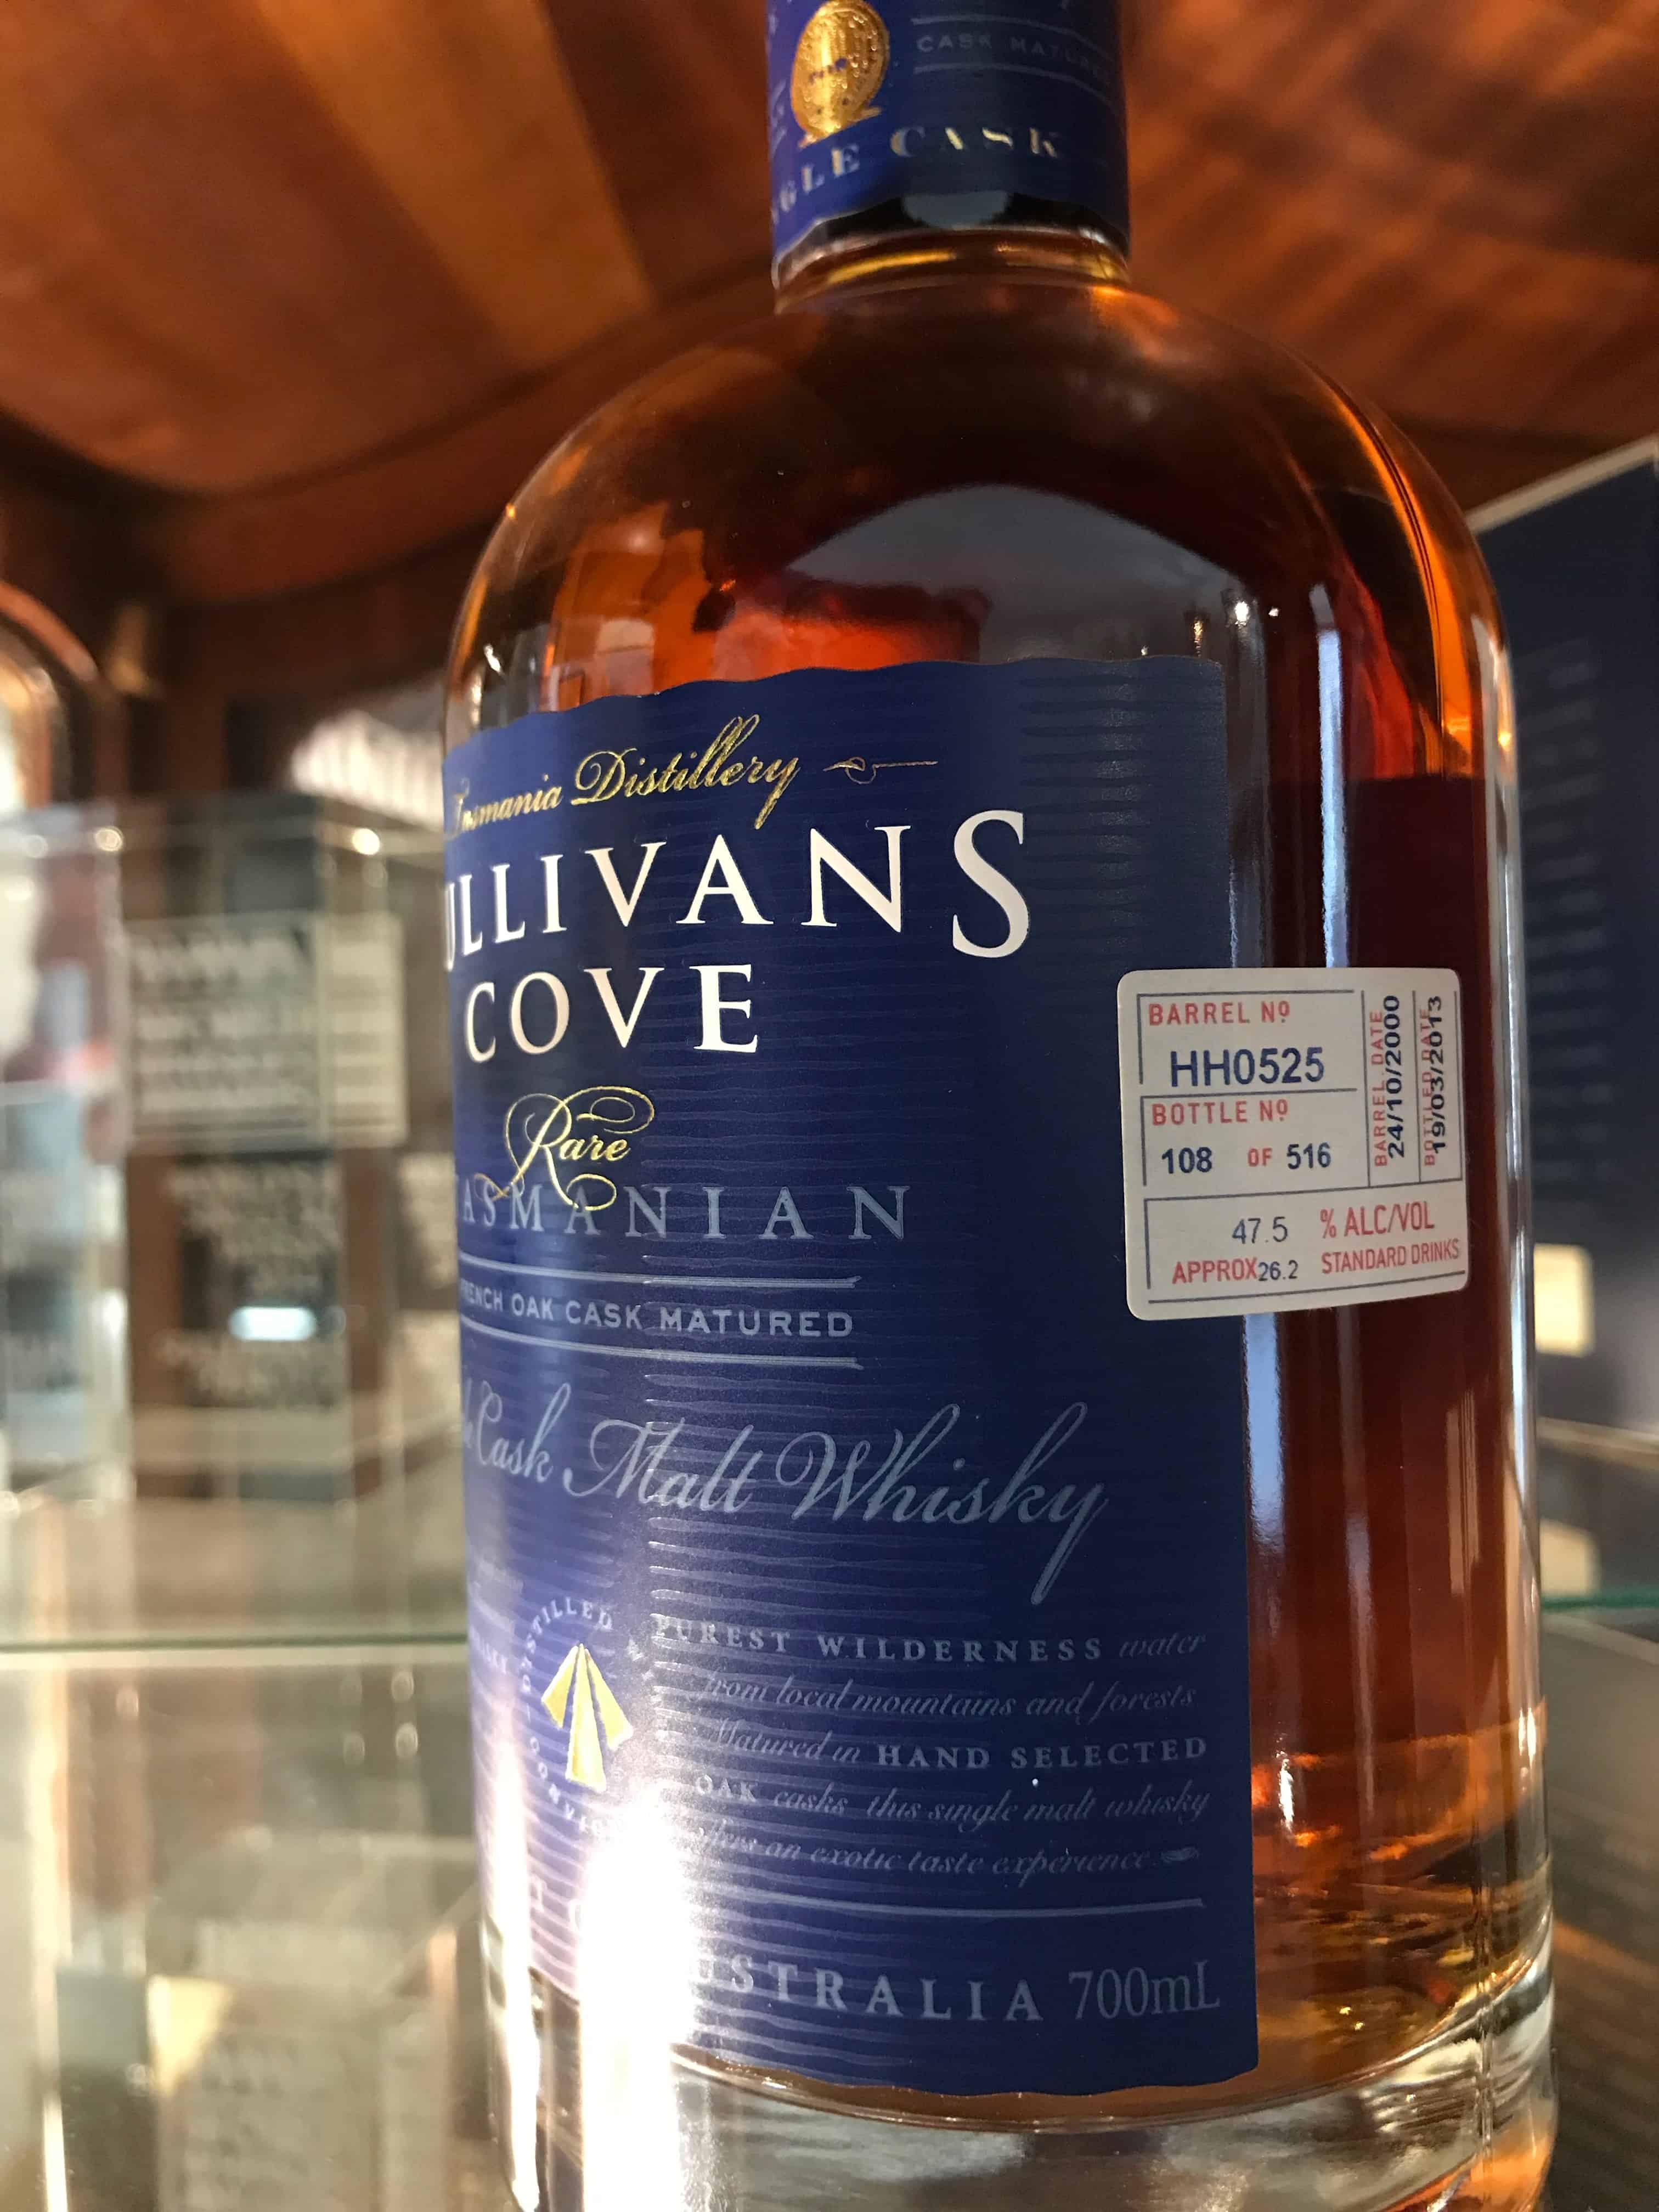 Sullivan Cove Whisky 2014